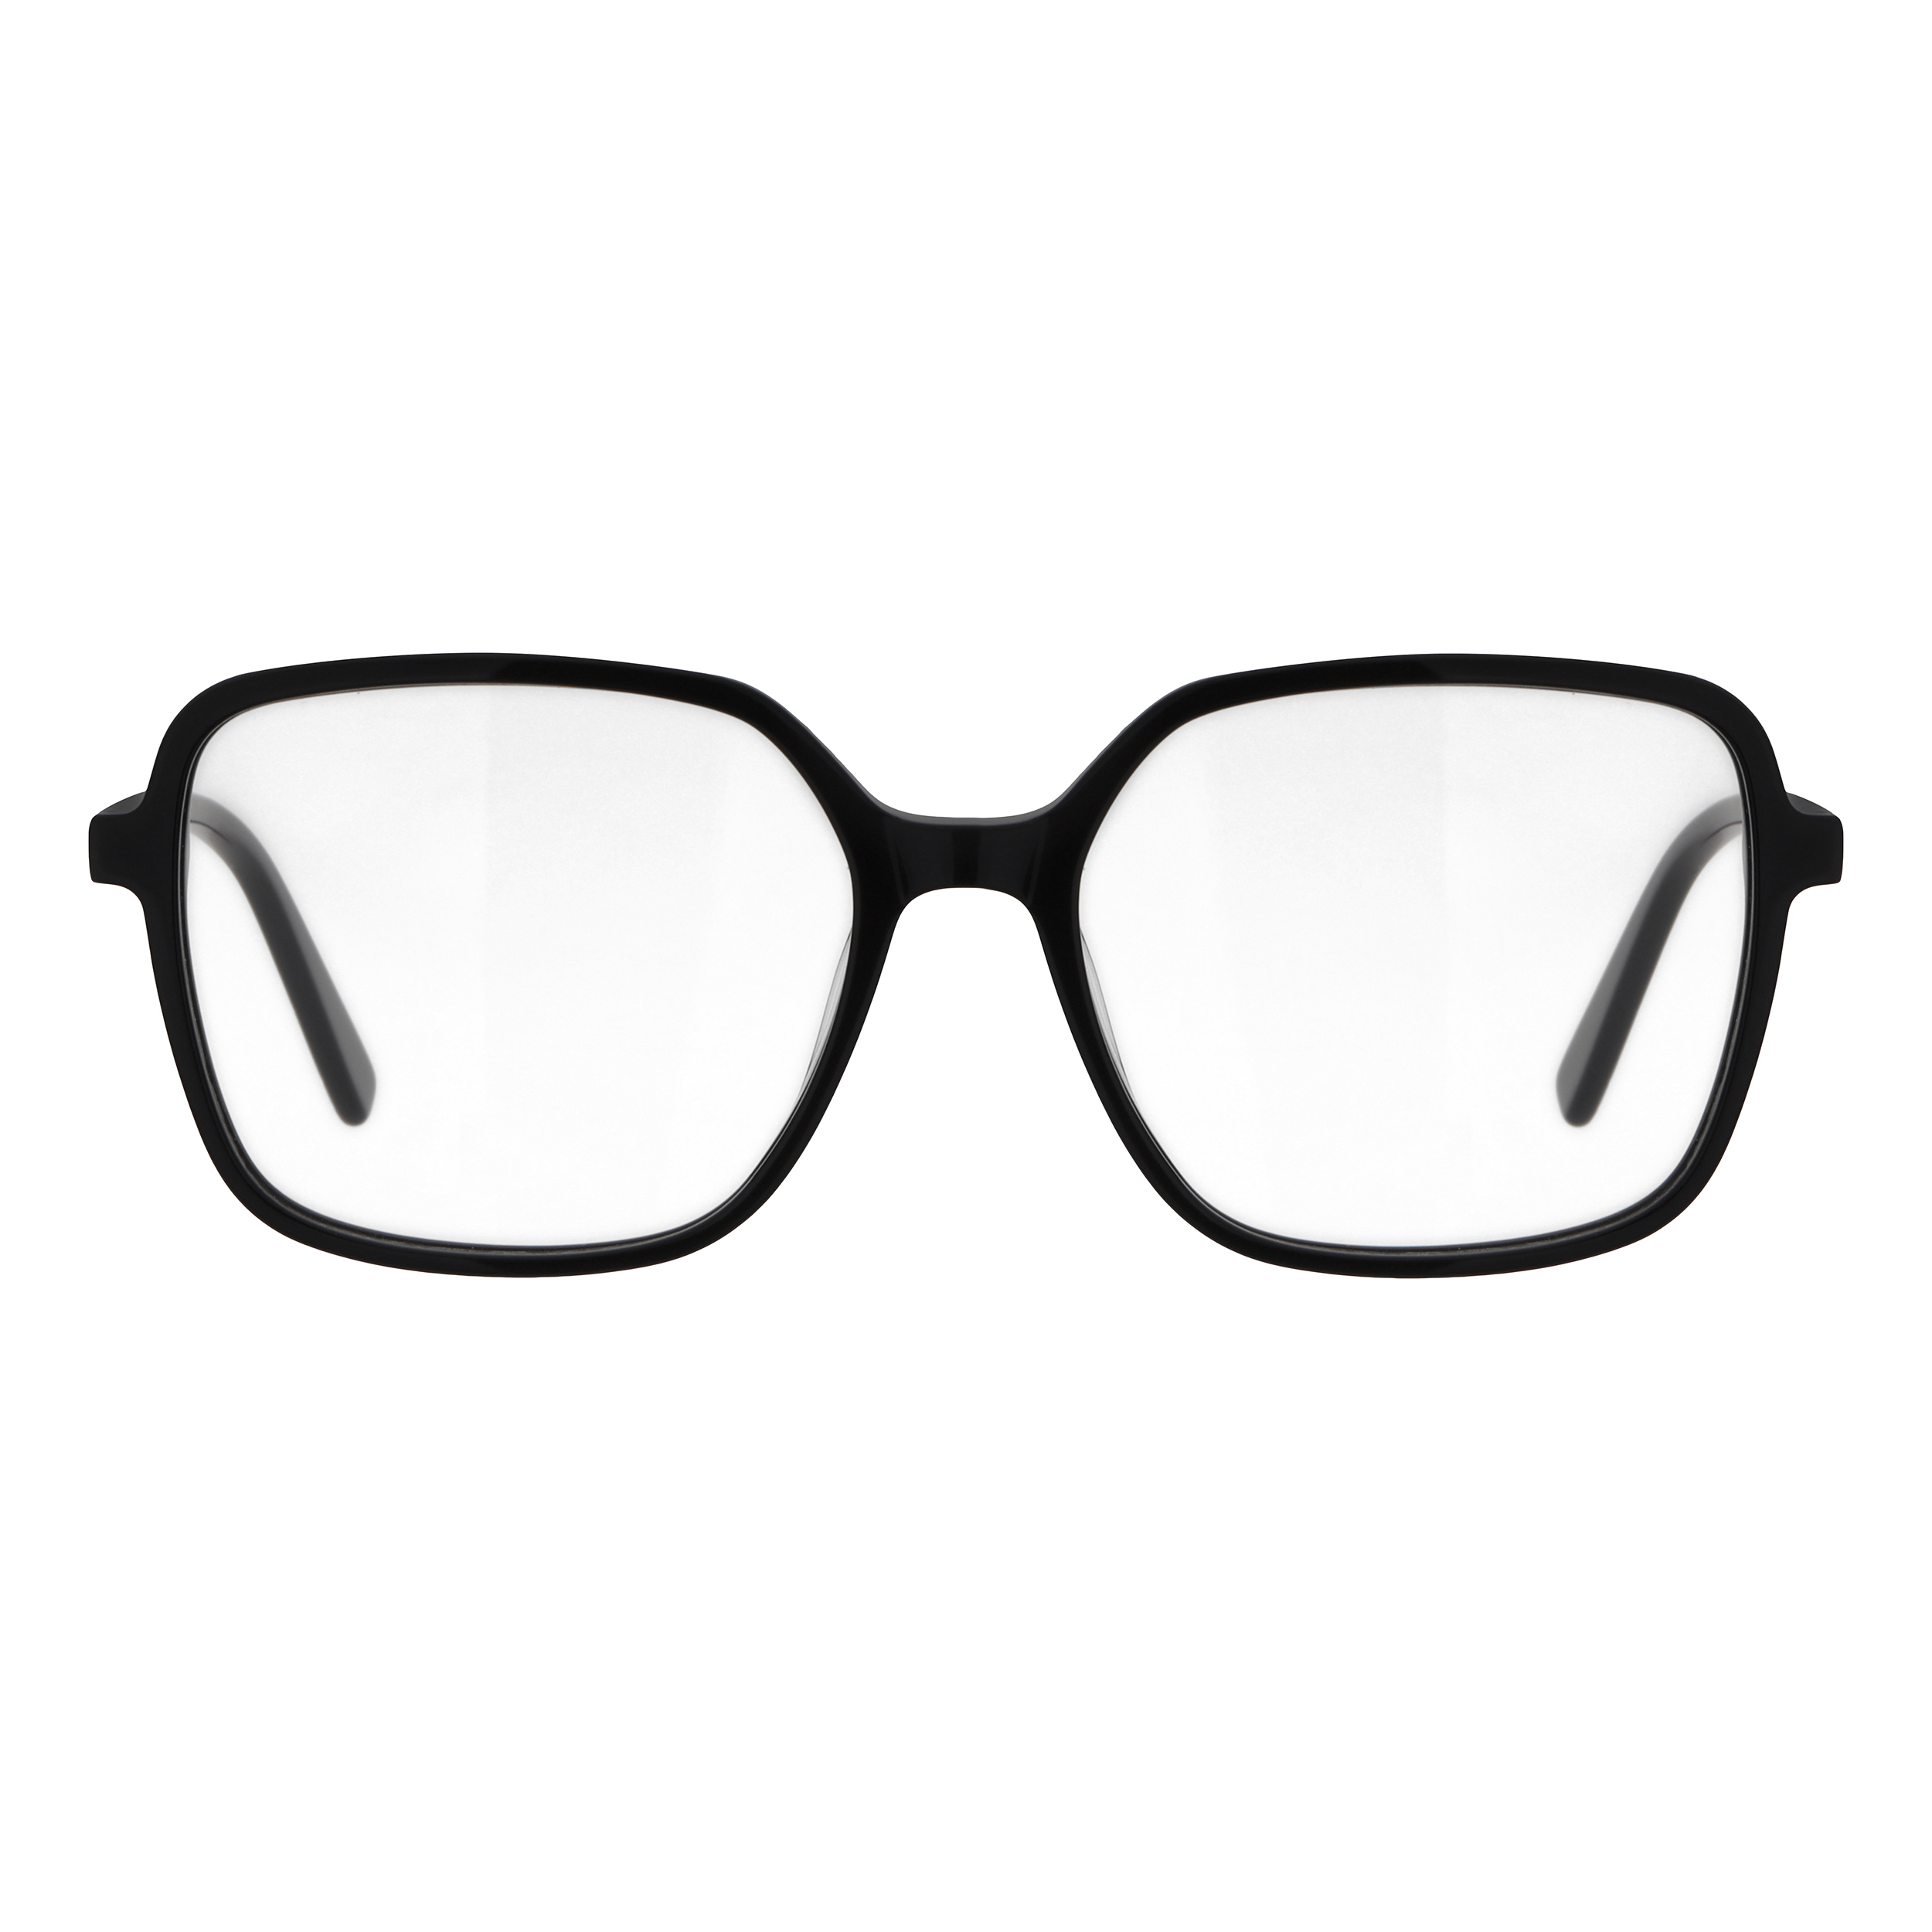 فریم عینک طبی زنانه انزو مدل 019